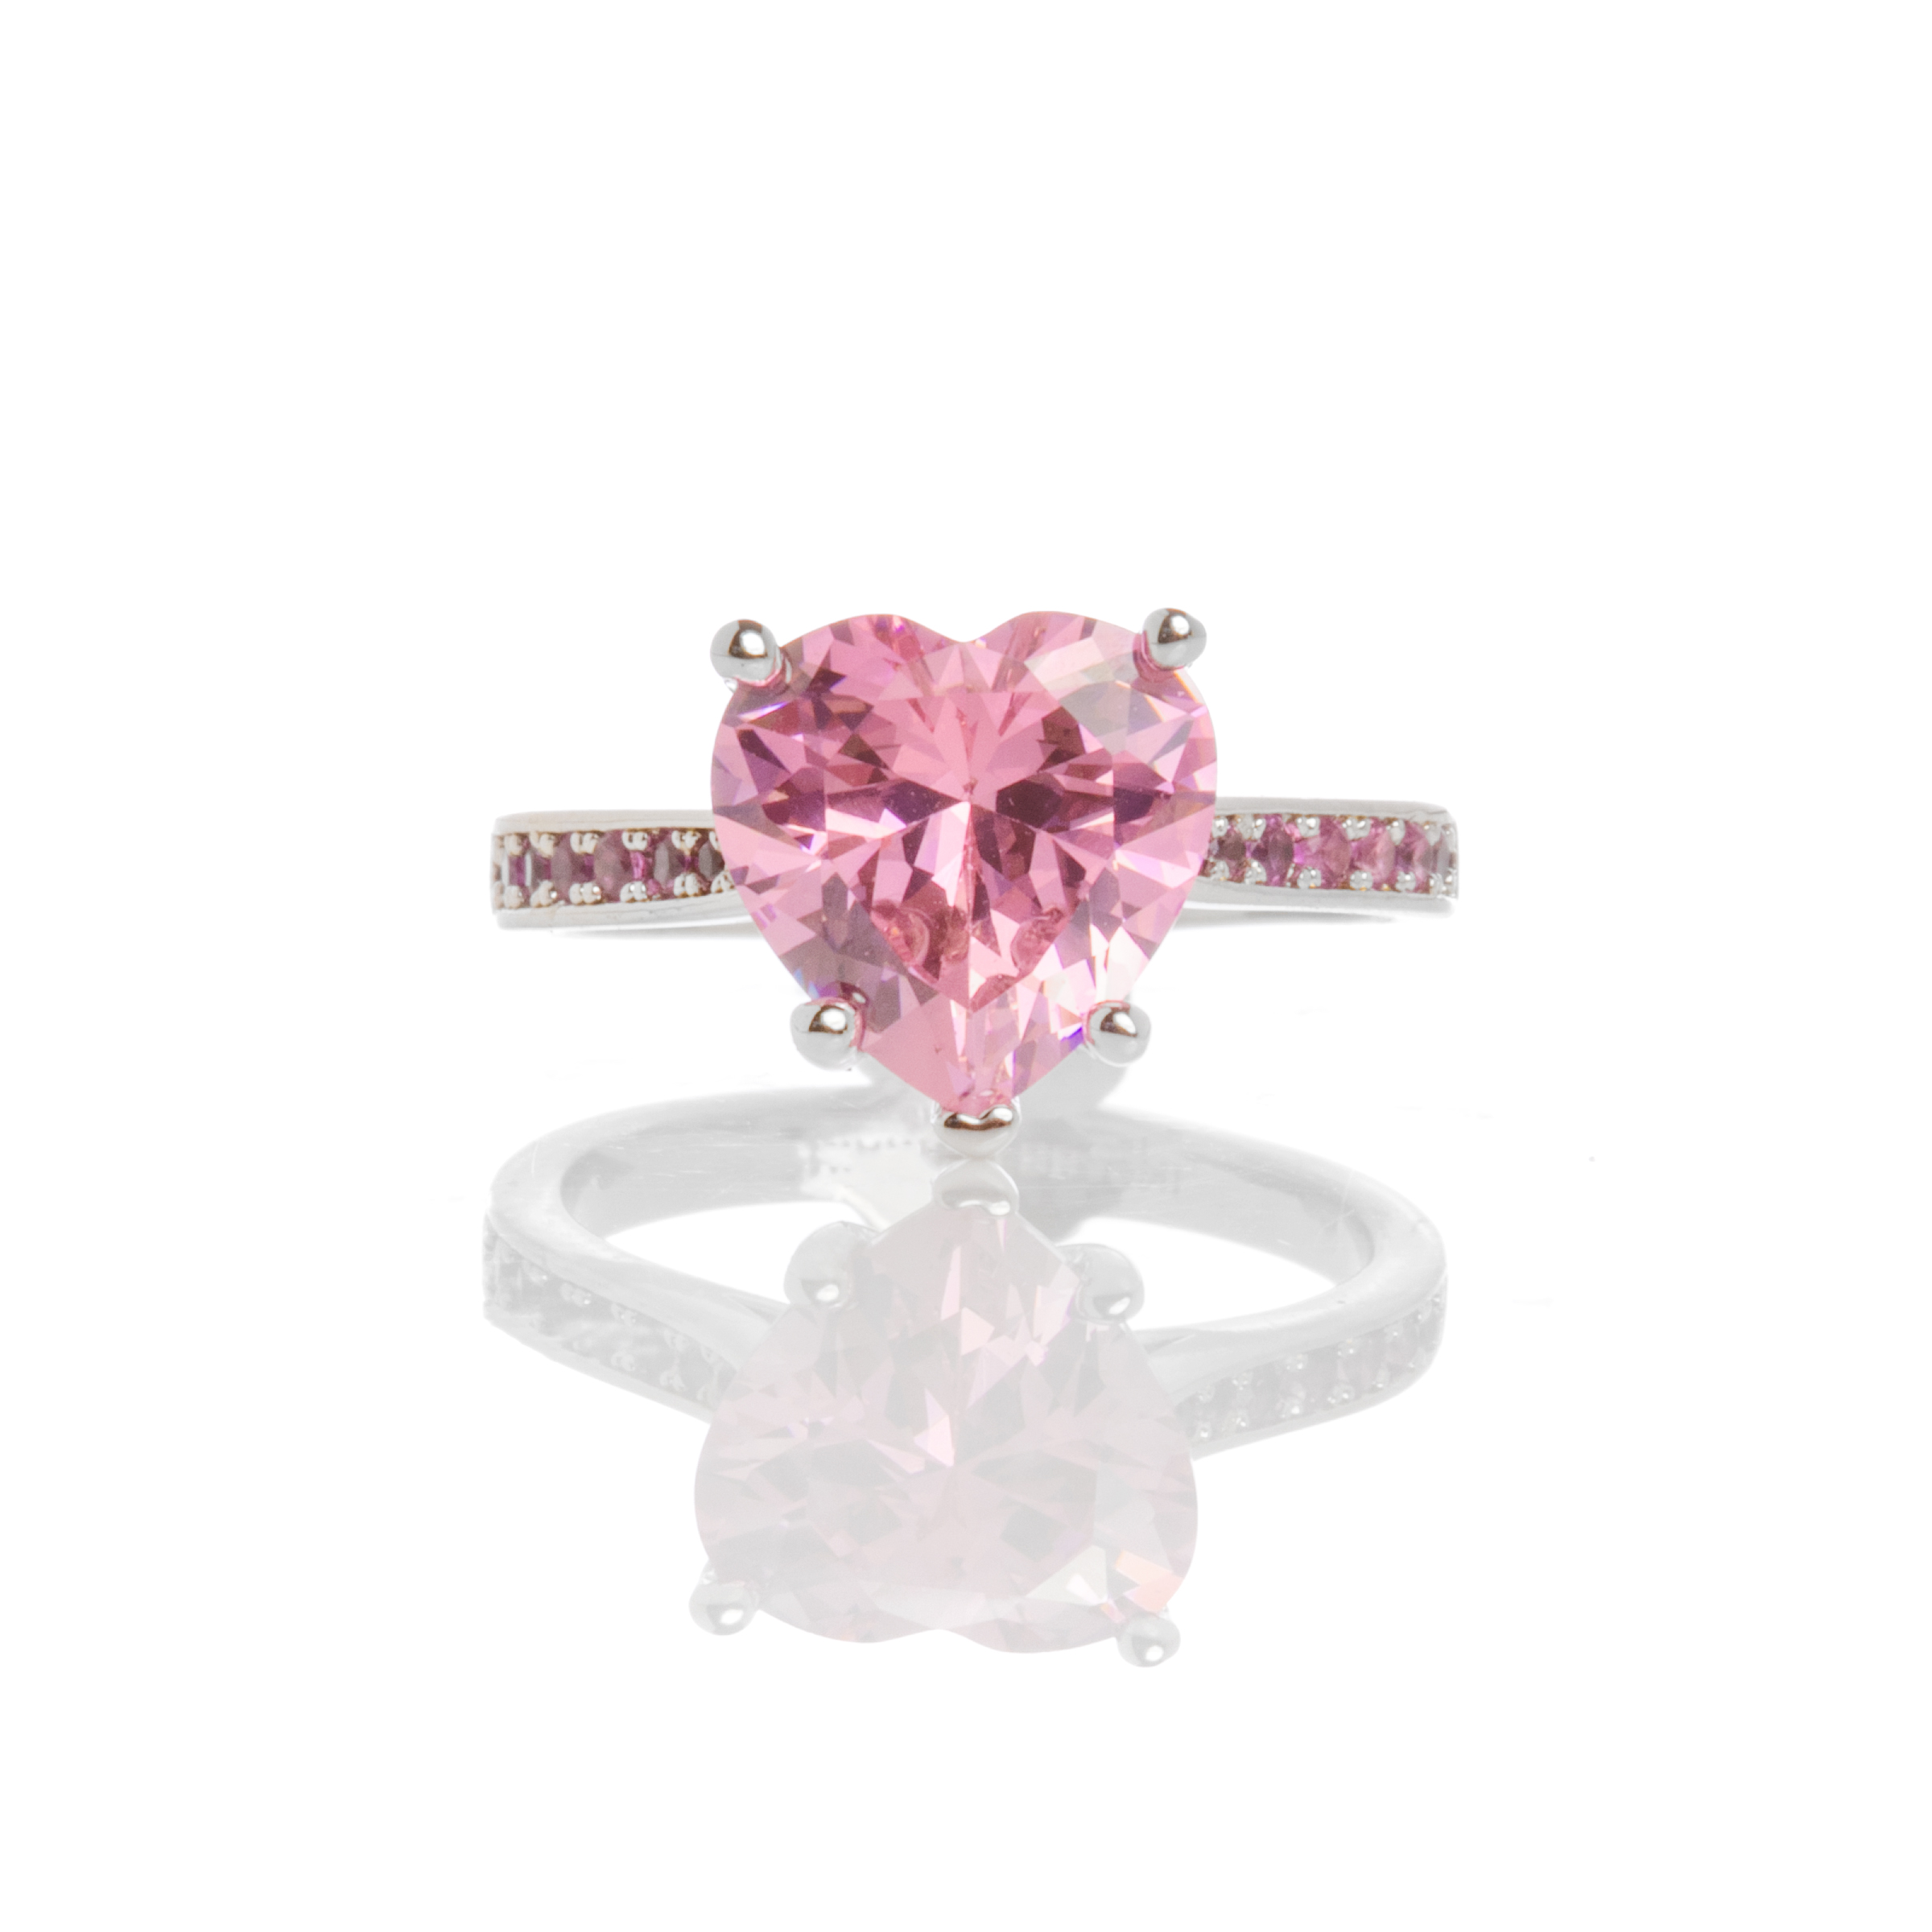 Δαχτυλίδι Chiara Ferragni με Ροζ Καρδιά και Ροζ Πέτρες